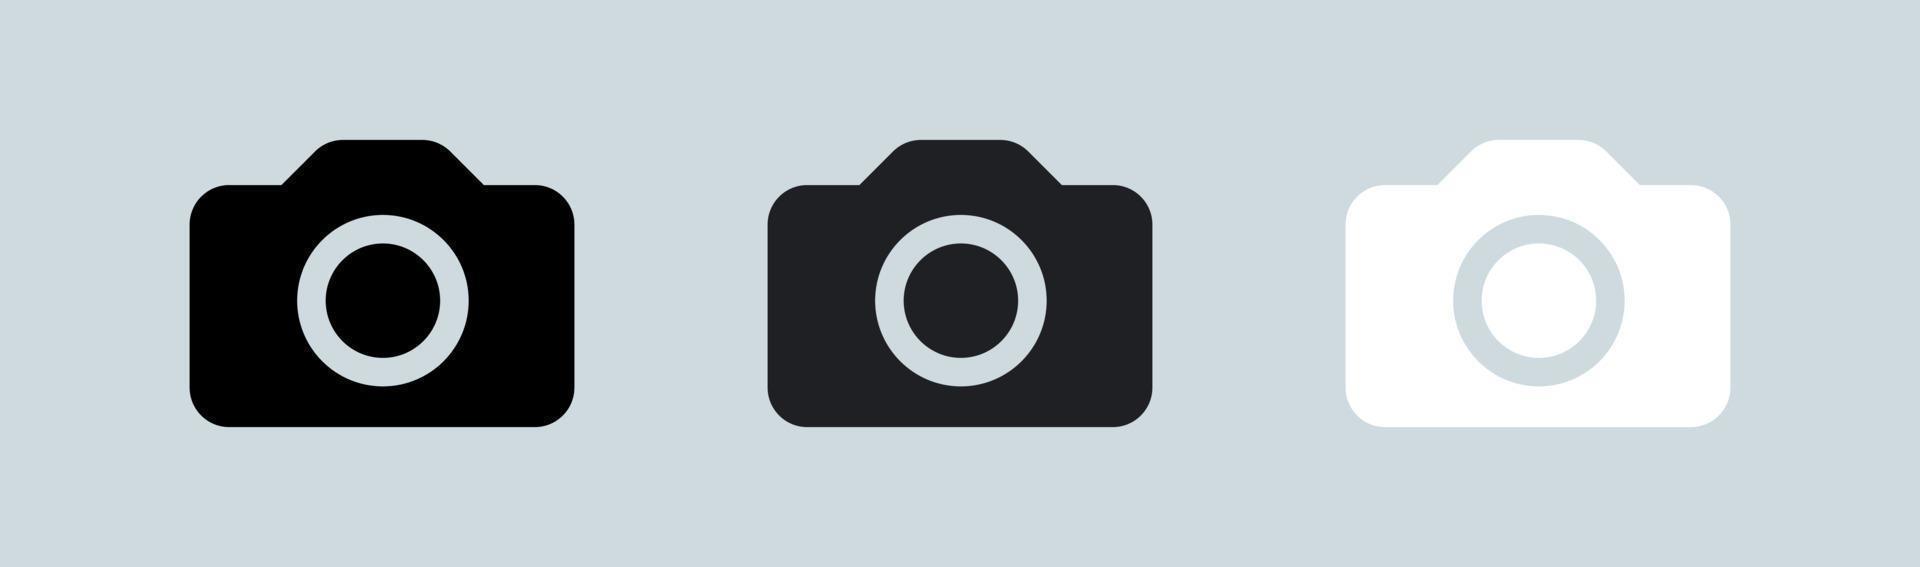 Kamerasymbol in Schwarz-Weiß-Farben. Fotovektorsymbol für Apps und Webdesign. vektor